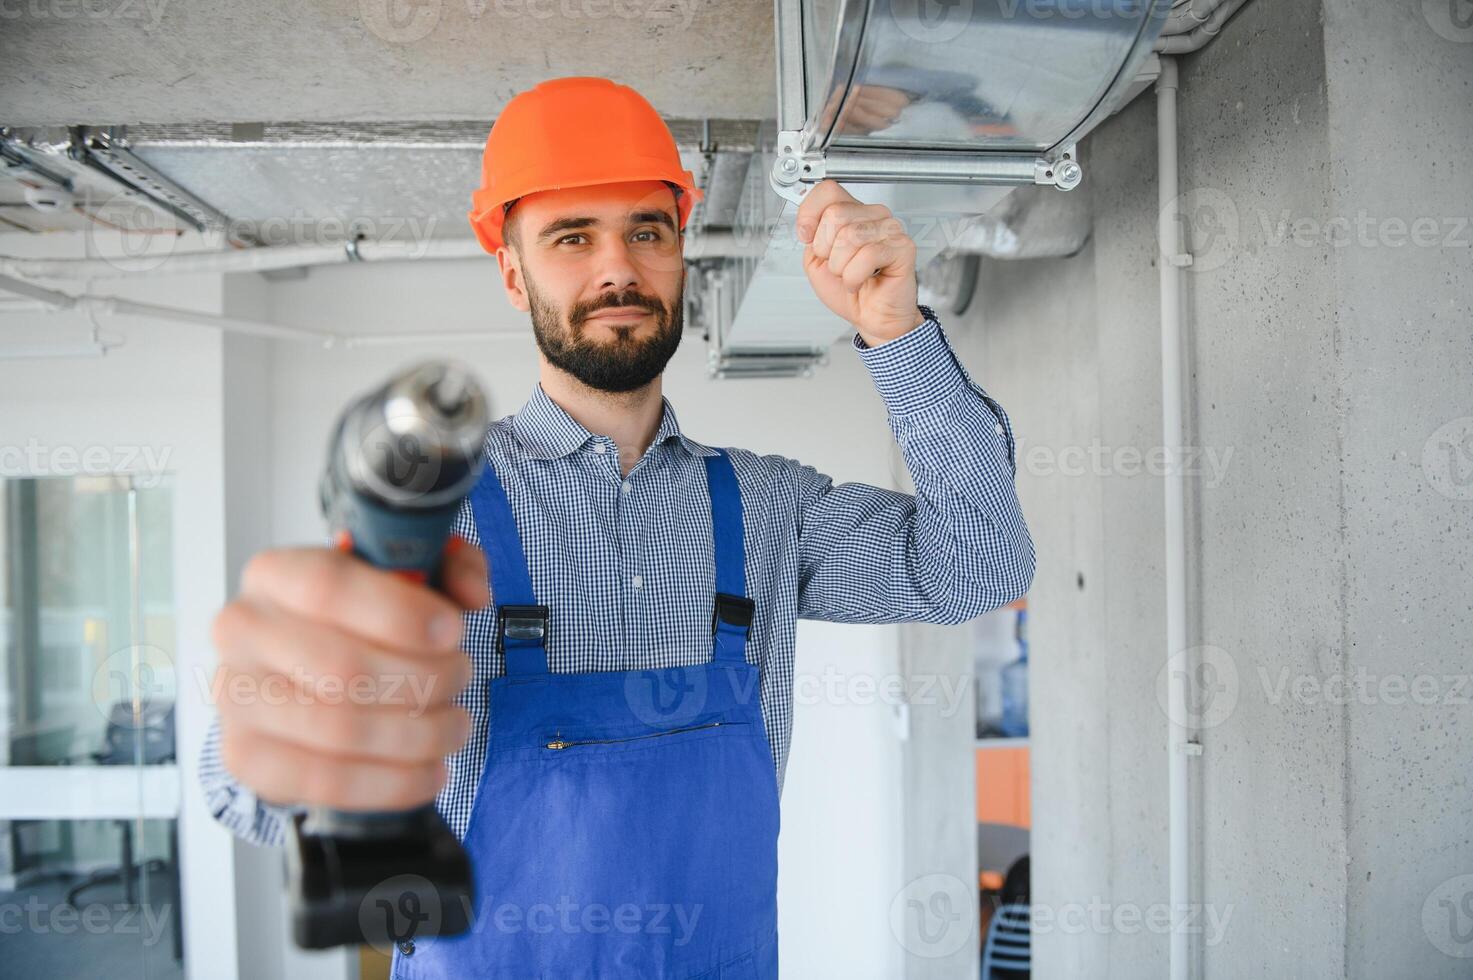 hvac trabalhador instalar canalizado tubo sistema para ventilação e ar condicionamento. cópia de espaço foto